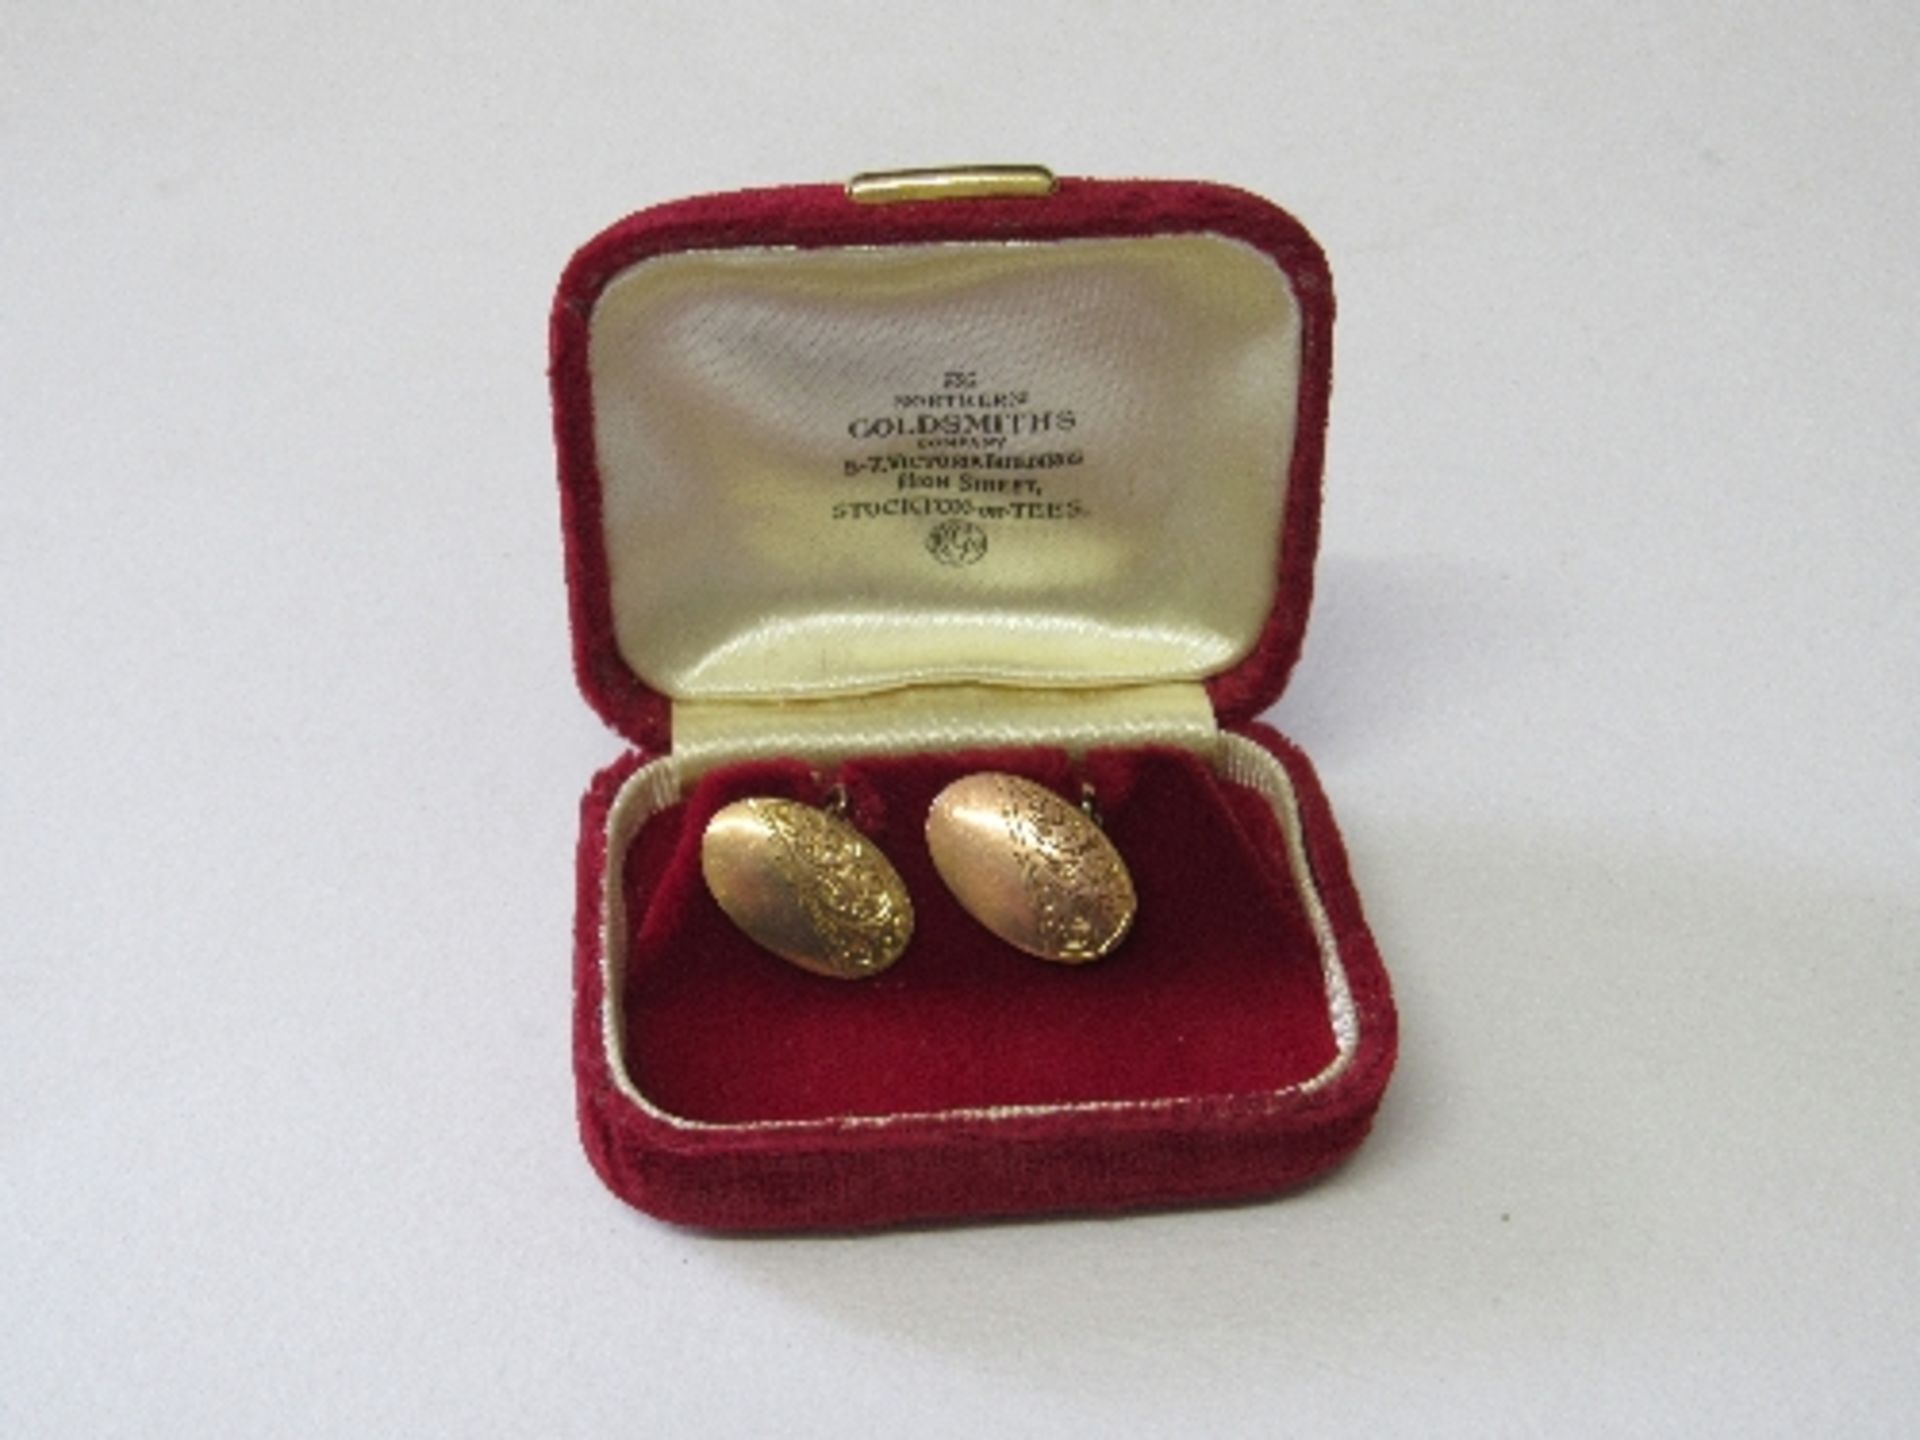 Pair of 9ct gold cufflinks, wt 4.5gms. Estimate £40-50.